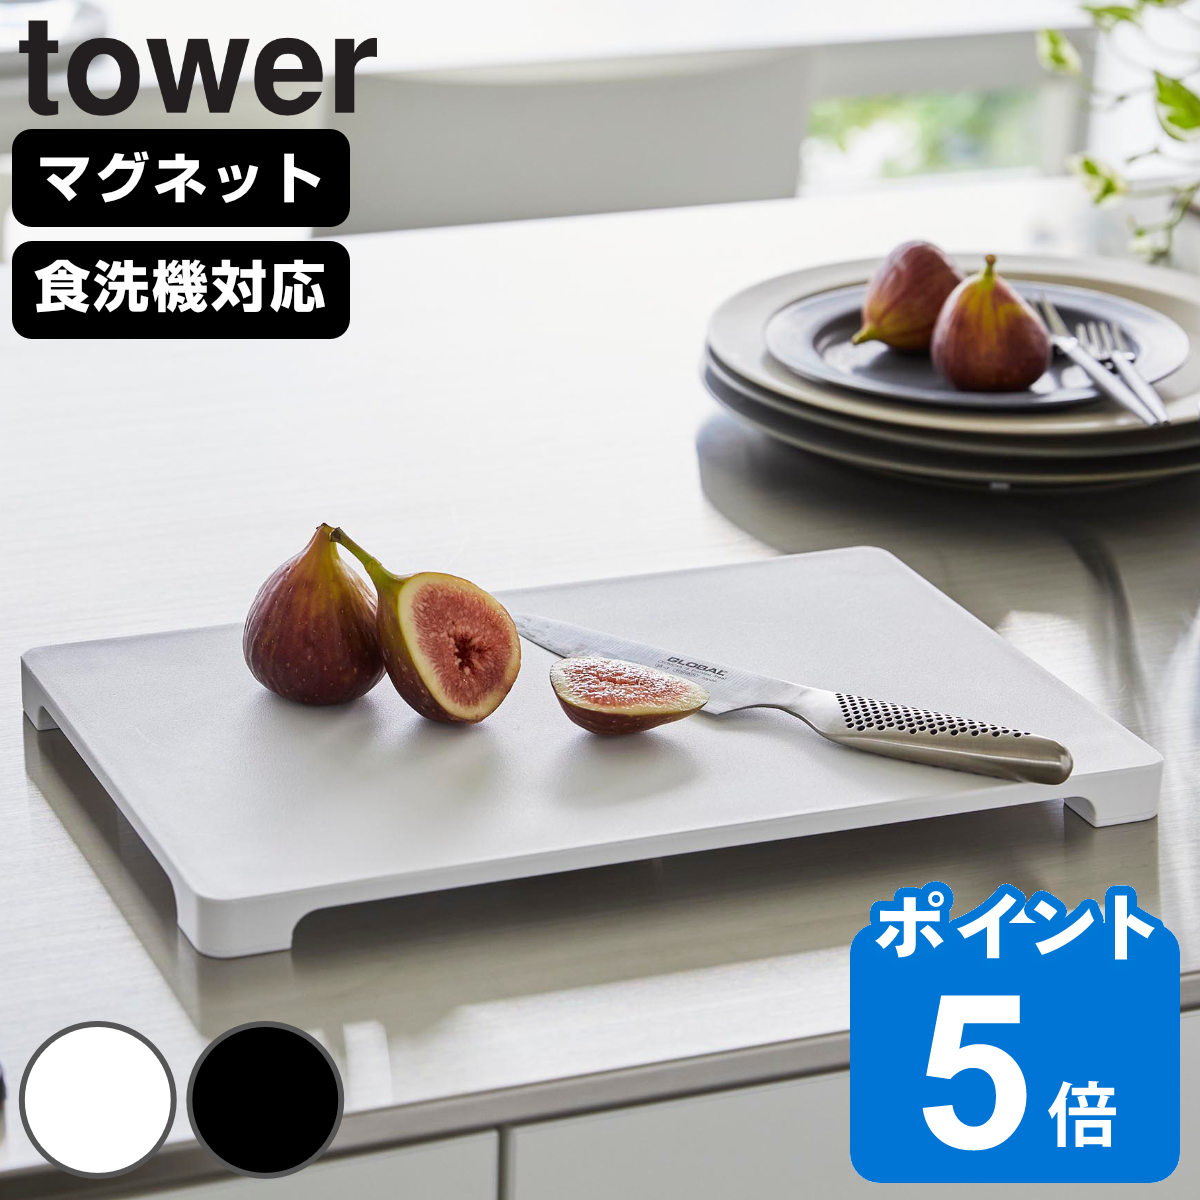 山崎実業 tower 食洗機対応 マグネット抗菌まな板 タワー